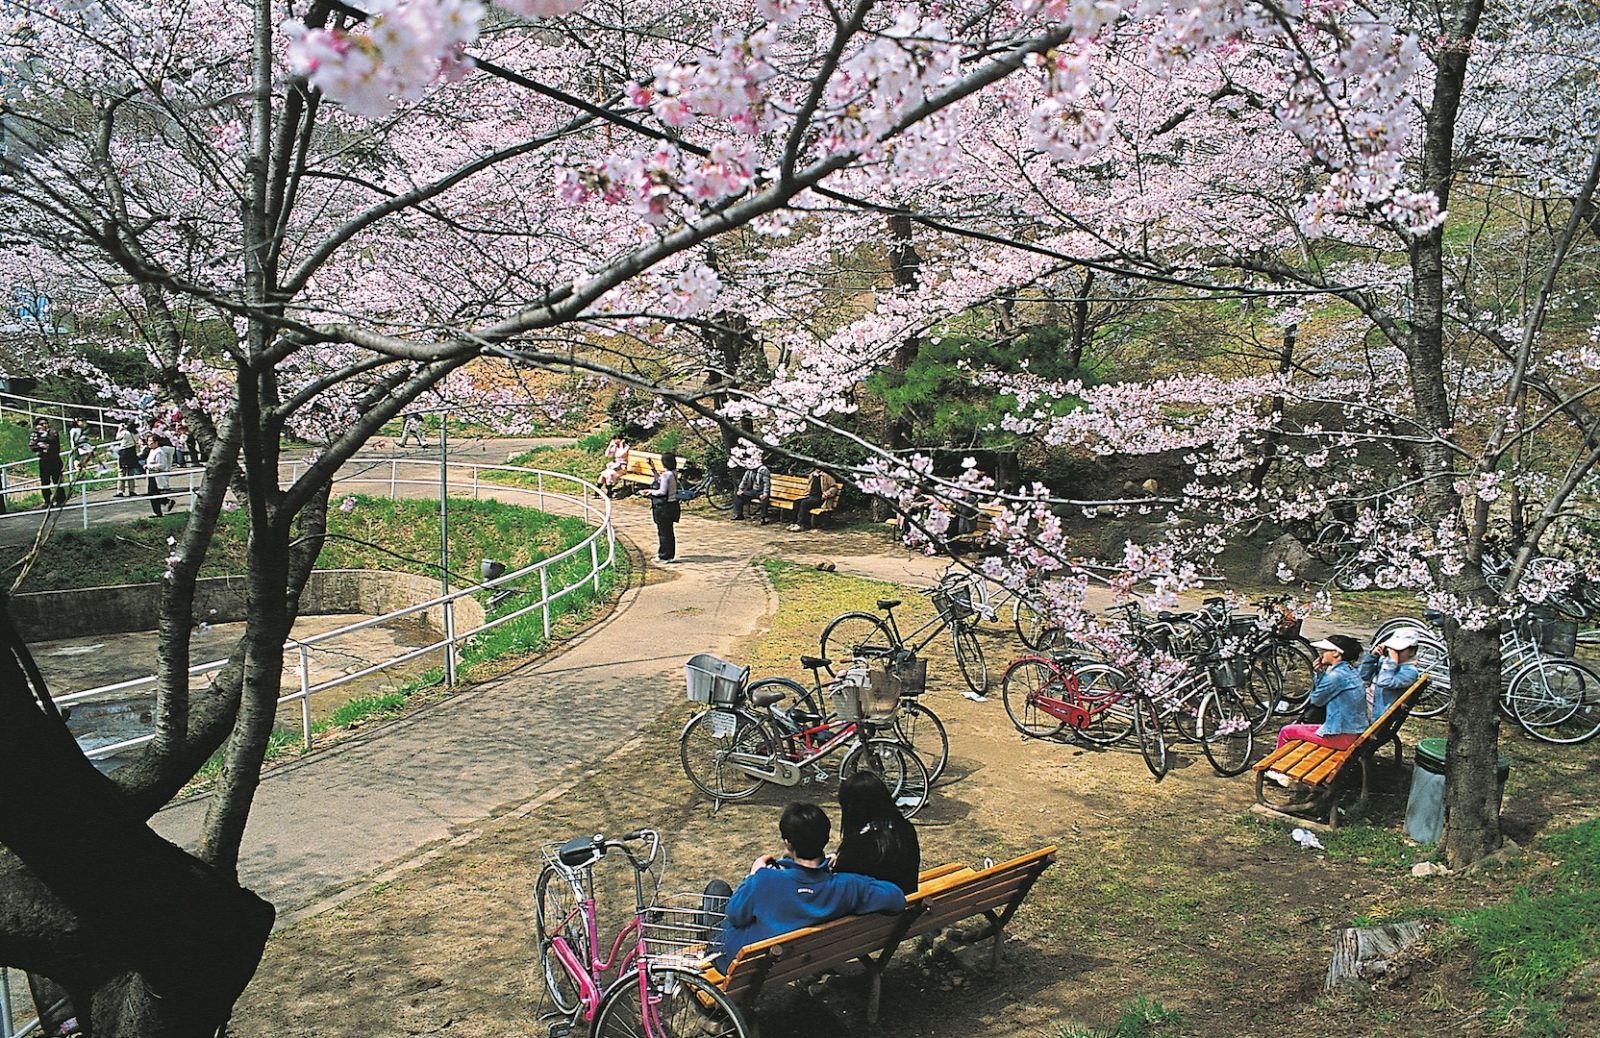 In Giappone per ammirare i fiori di ciliegio